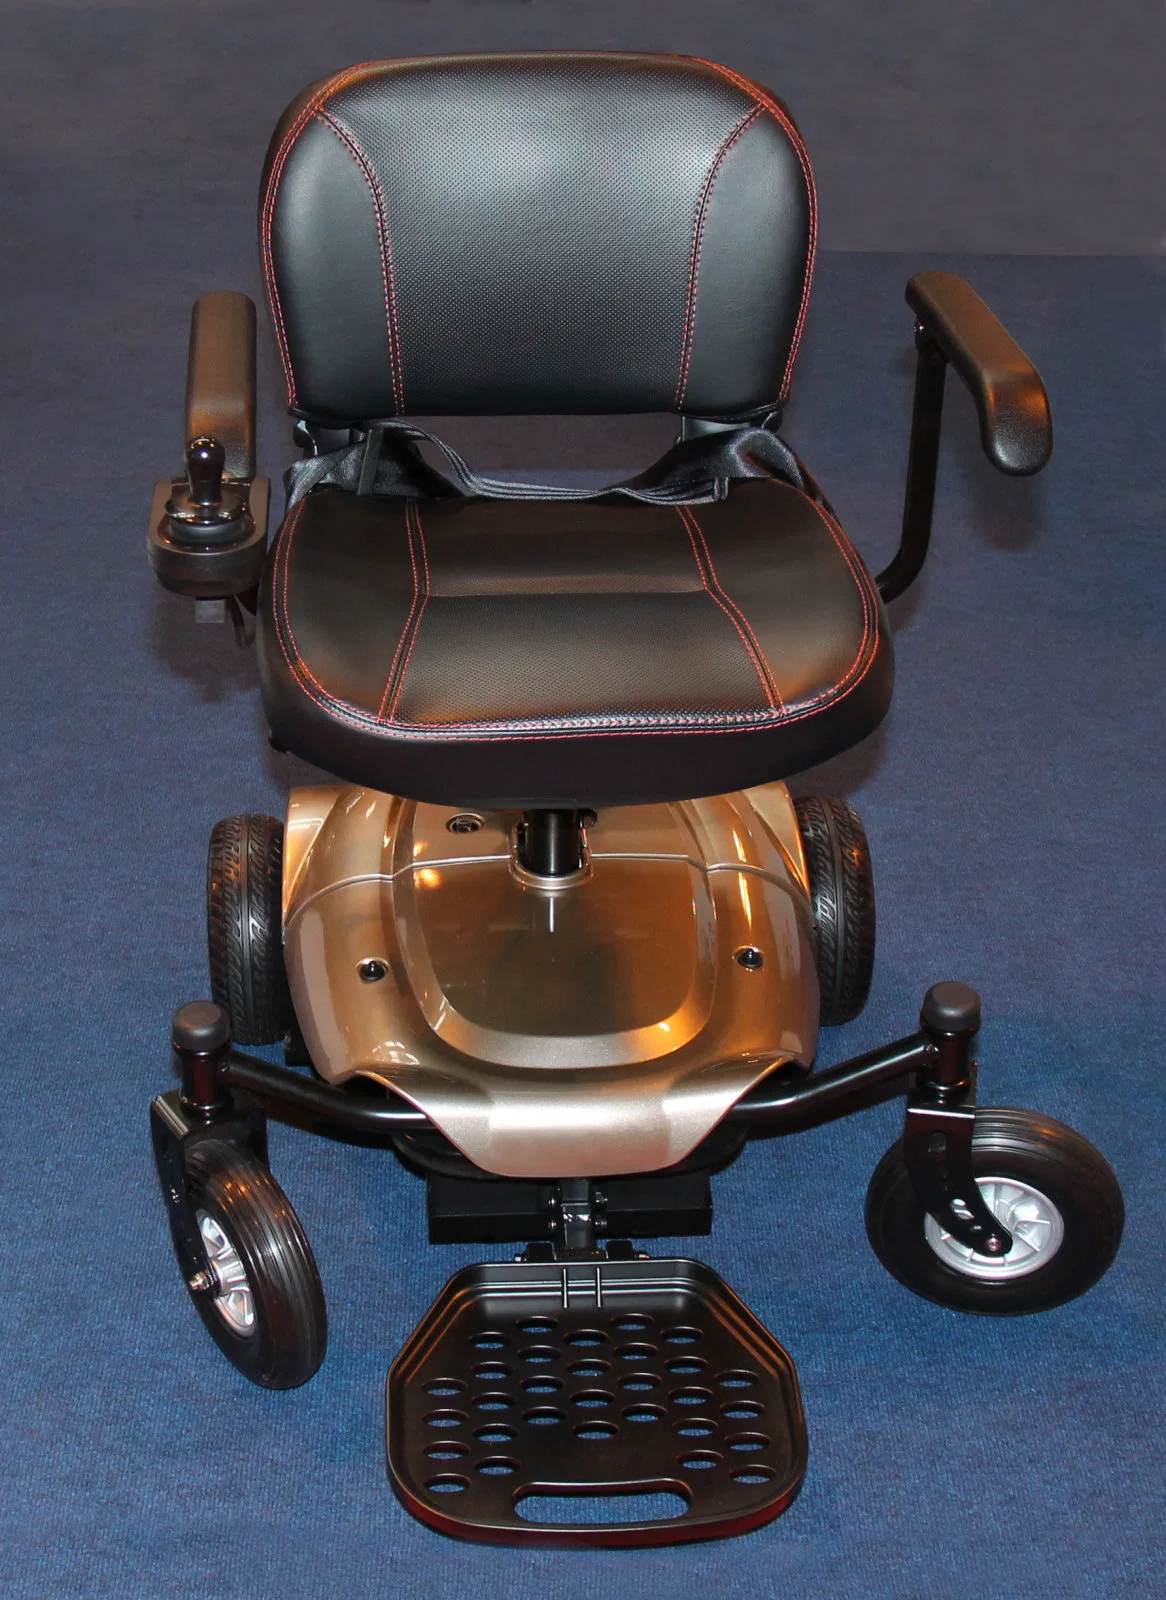 كرسي متحرك كهربائي مزود بأربع عجلات مُسكوتر يستخدم في الخارج مع سعر منخفض